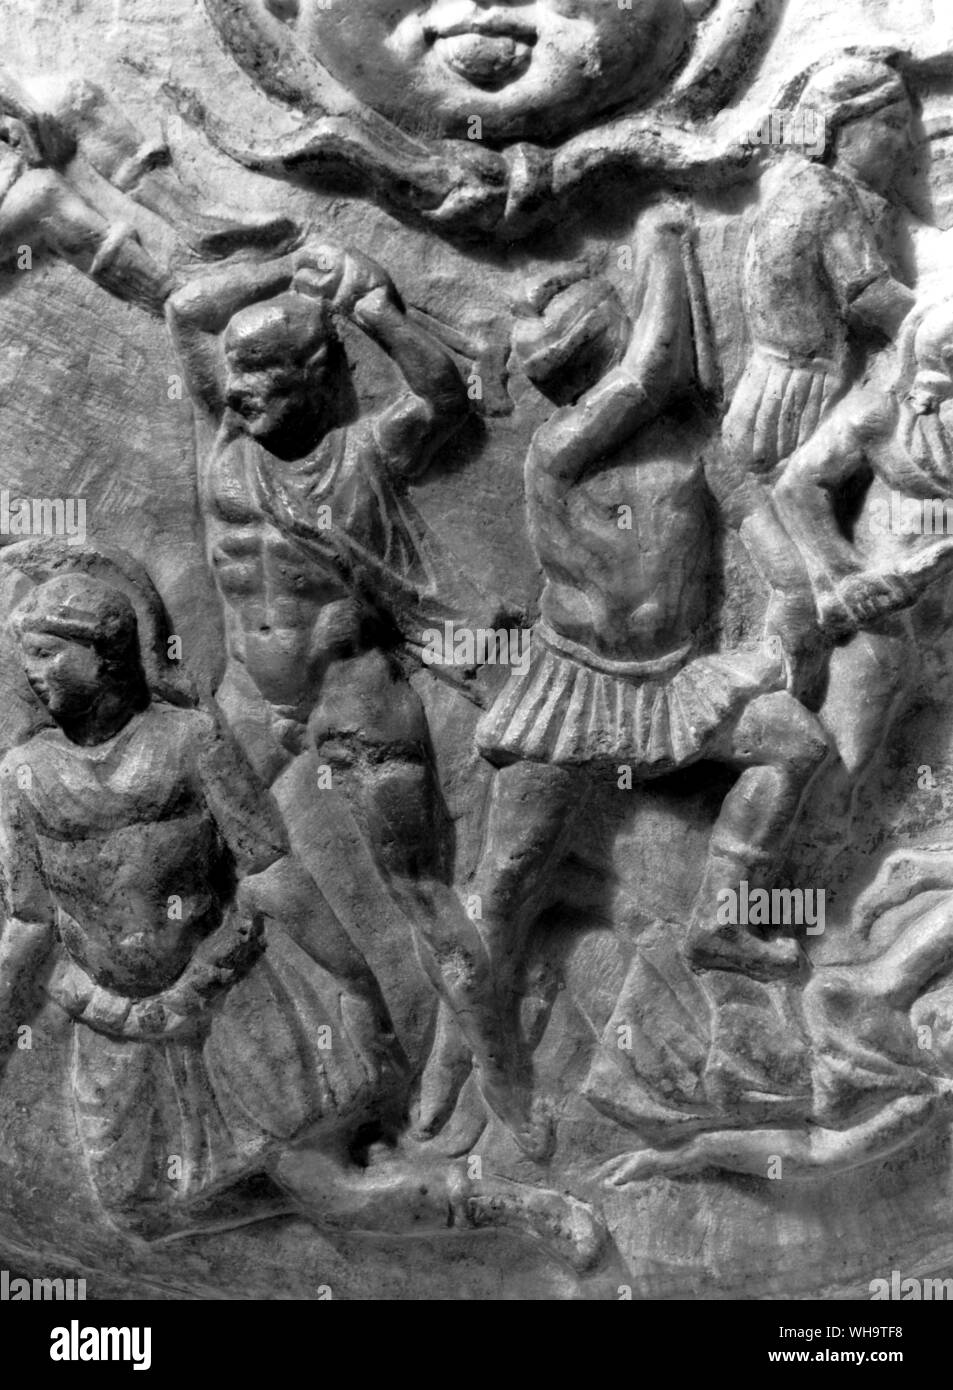 Copia romana dello scudo di Fidia' Athena Parthenos. Il calvo Greco sulla sinistra circa per colpire un caduto Amazon è detto essere Fidia stesso e il helmetted uomo accanto a lui il cui braccio nasconde il suo volto, Pericle. Foto Stock